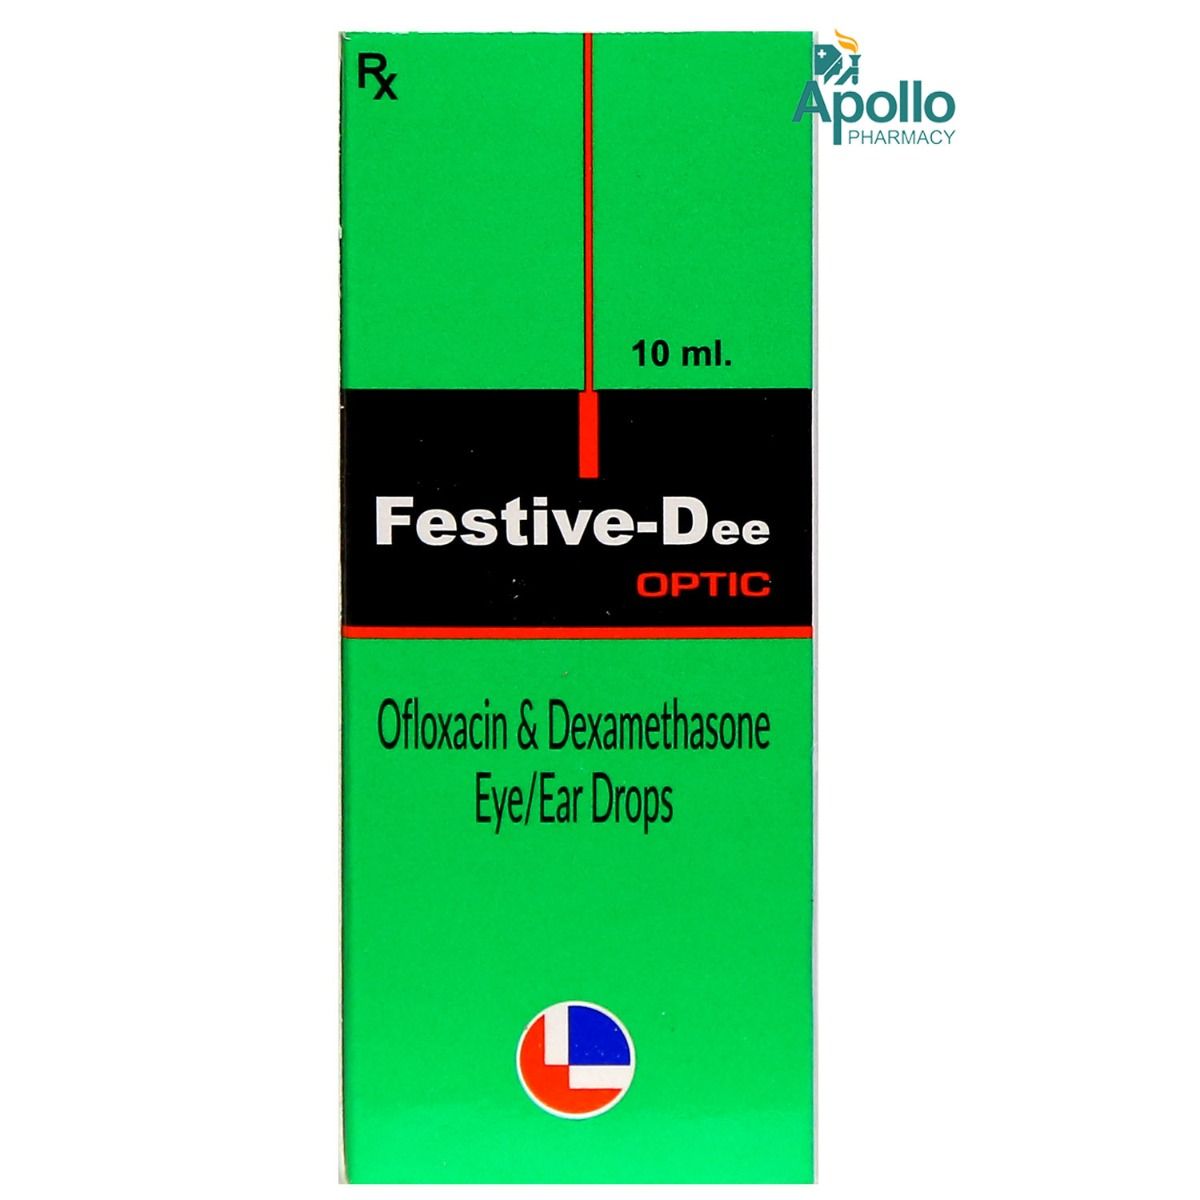 Buy Festive Dee Optic Eye/Ear Drops 10 ml Online